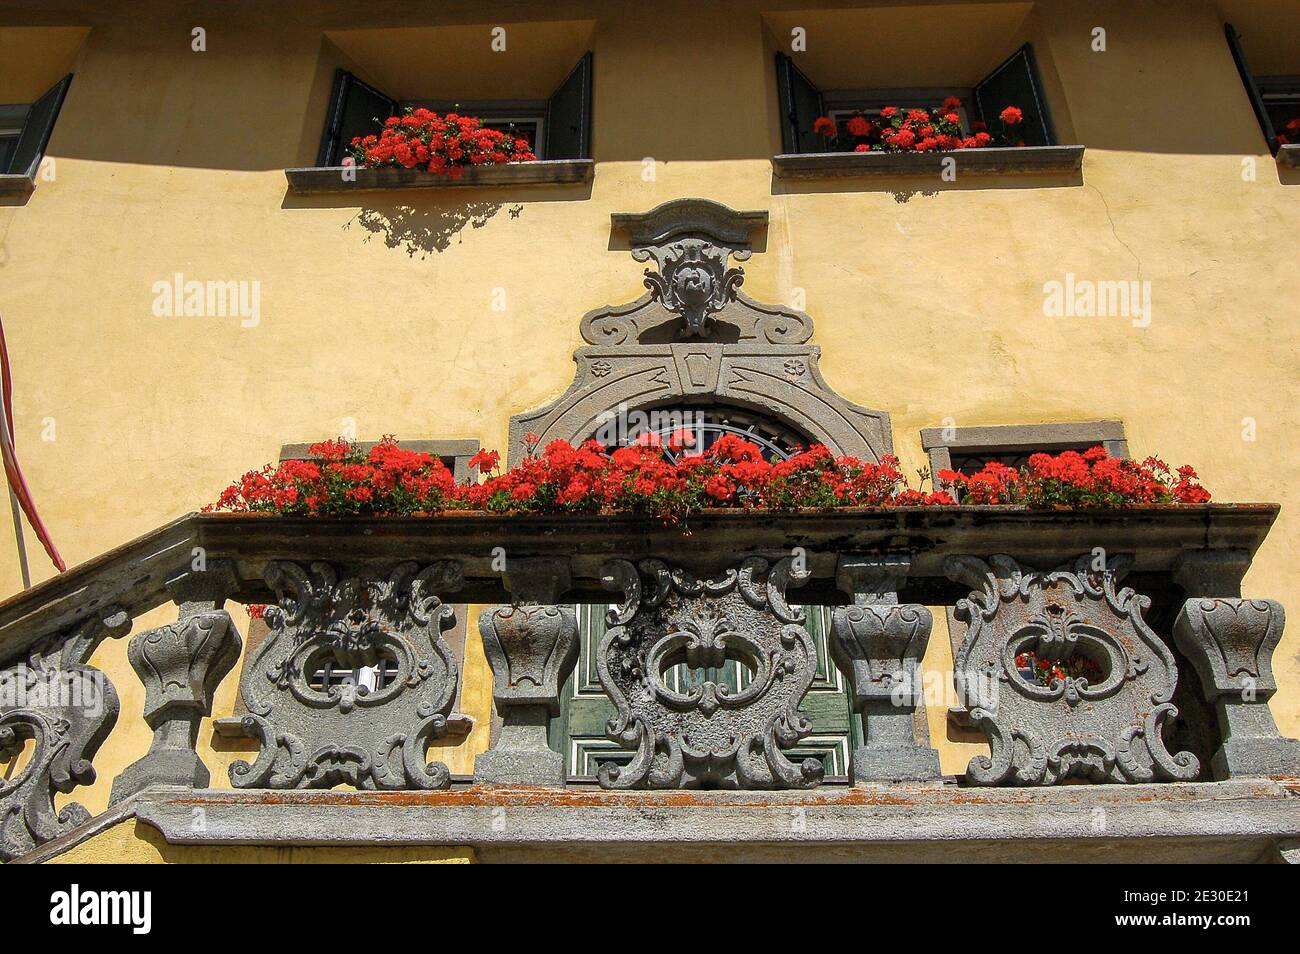 Ancienne maison avec balcon en pierre, porte et fenêtres avec géraniums rouges, ancien village de Zuoz, station touristique dans la vallée d'Engadin, Suisse. Banque D'Images